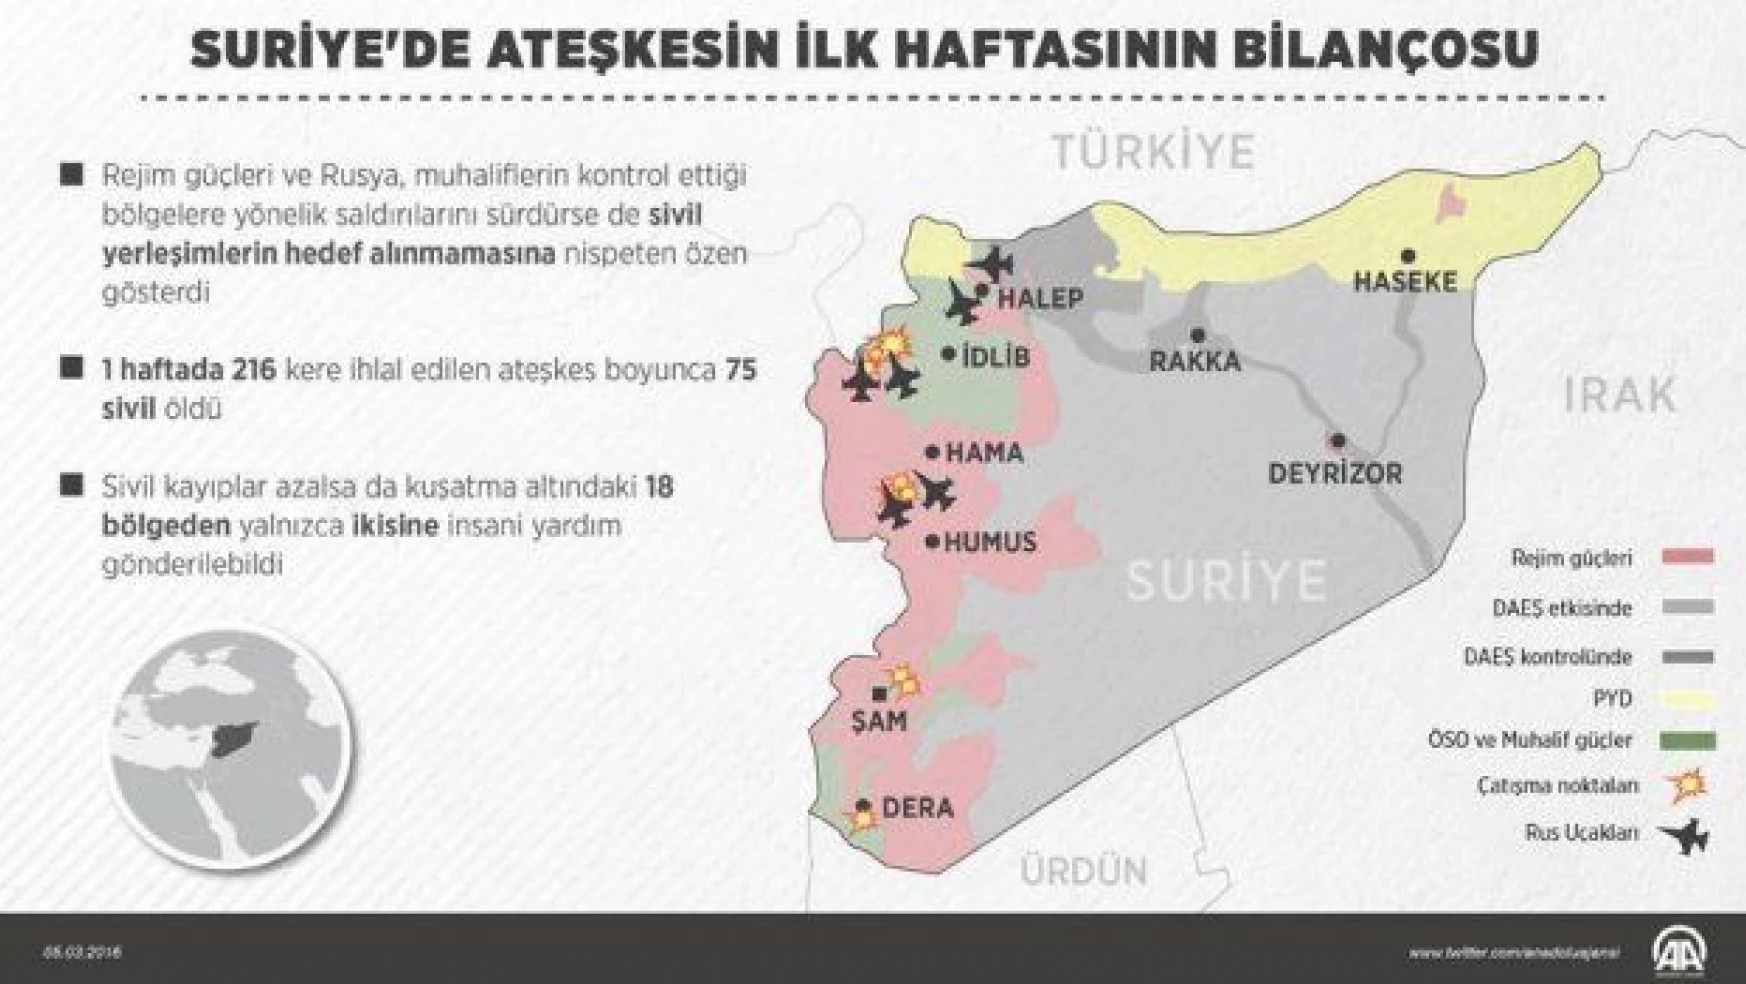 Suriye'de ateşkesin ilk haftasının bilançosu